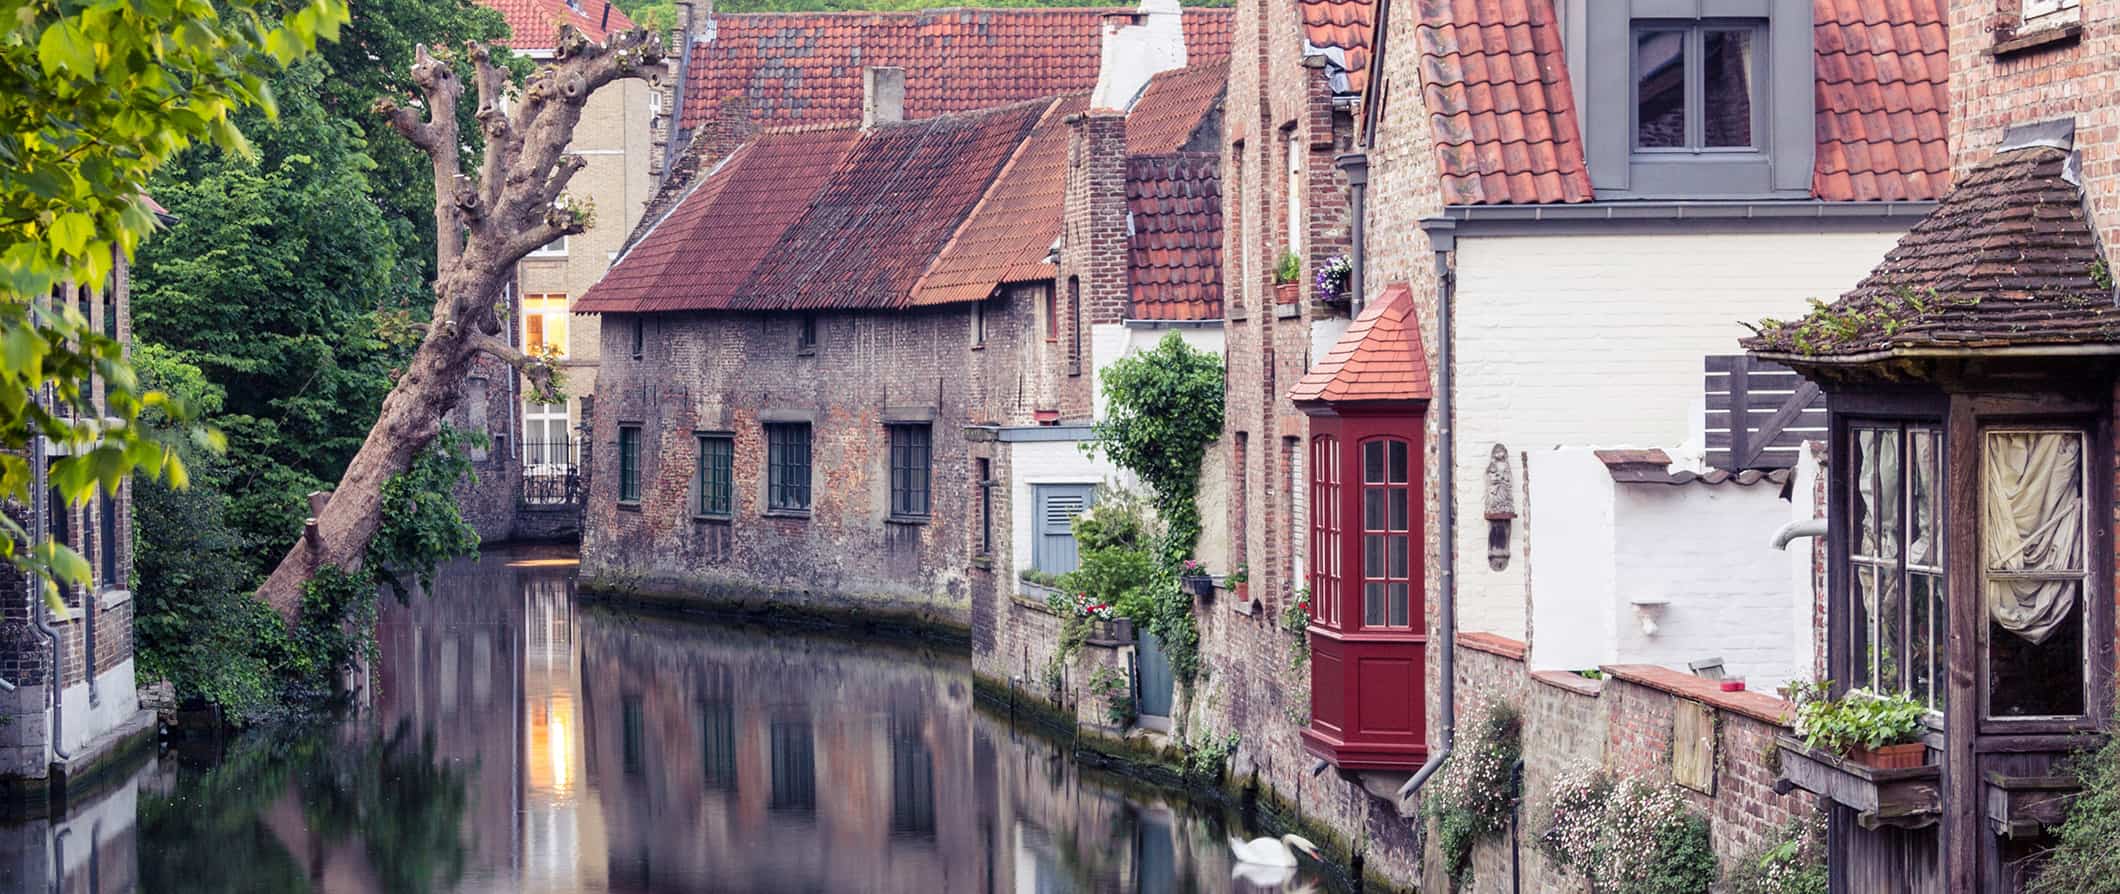 Canal tranquilo histórico em Bruges, Bélgica, cercado por casas antigas e vegetação exuberante